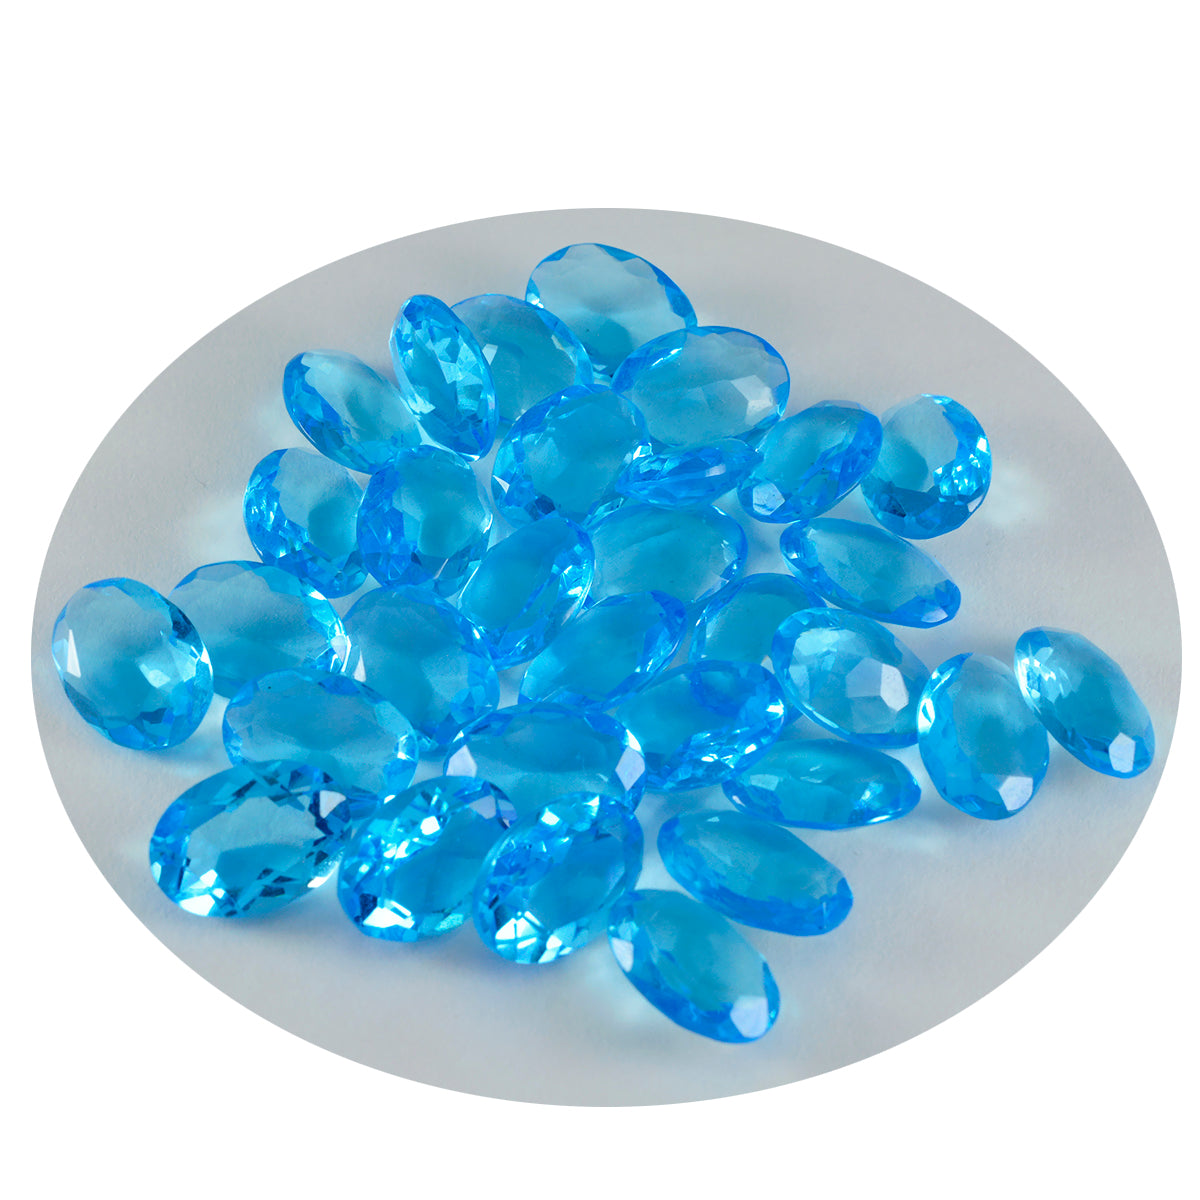 Riyogems 1PC Blue Topaz CZ gefacetteerd 7x9 mm ovale vorm mooie kwaliteitsedelsteen